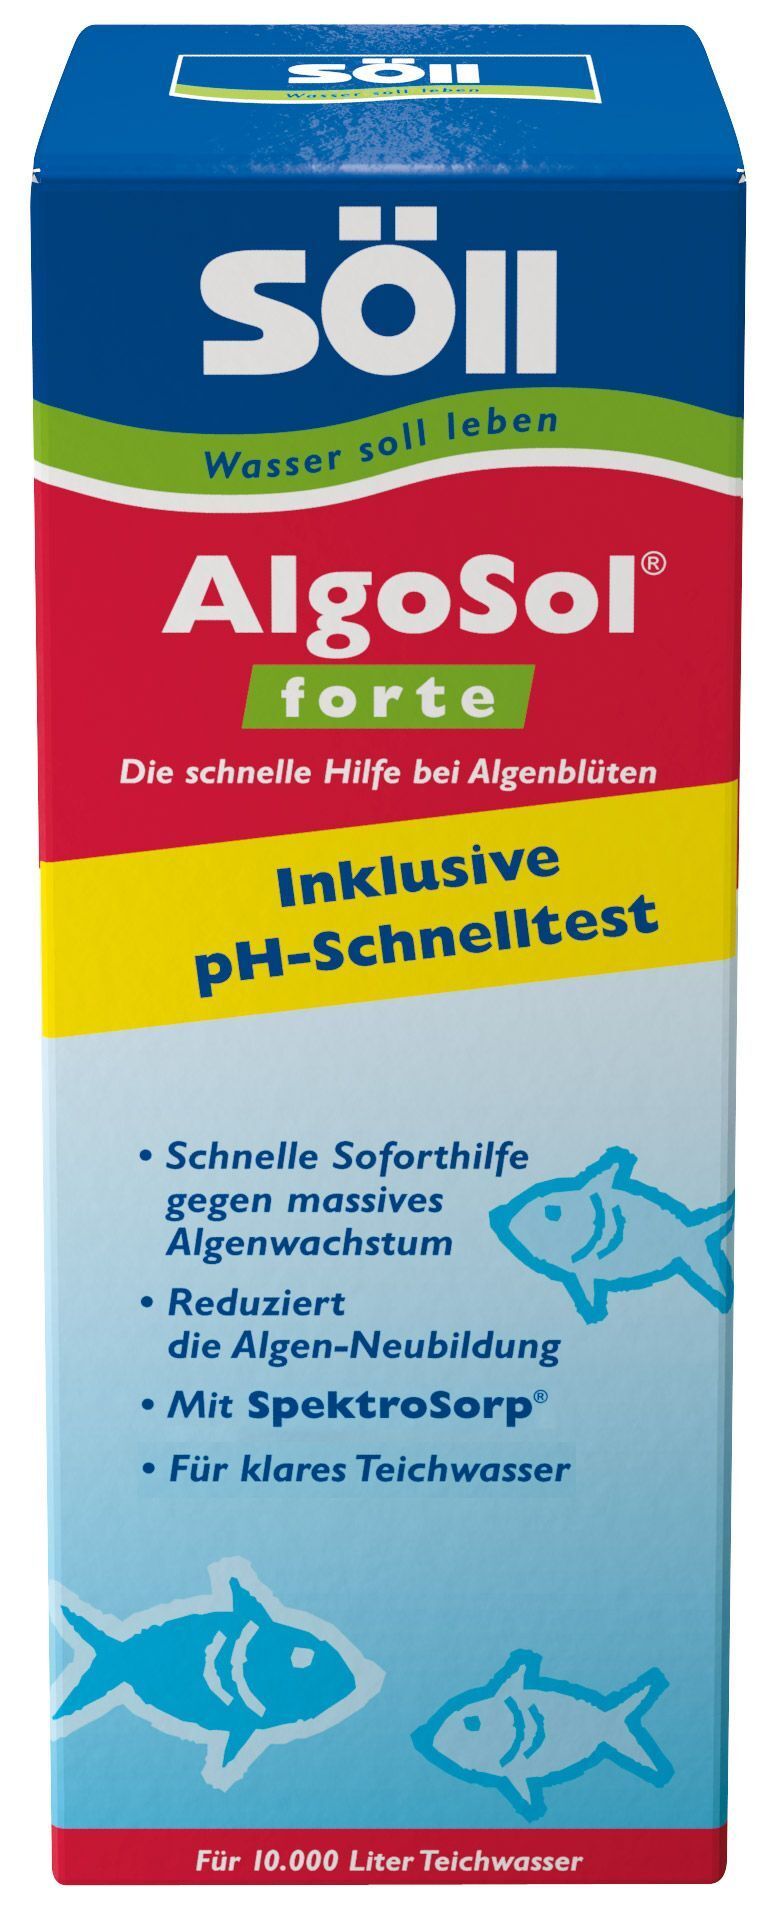 AlgoSol forte gegen Algenblüten